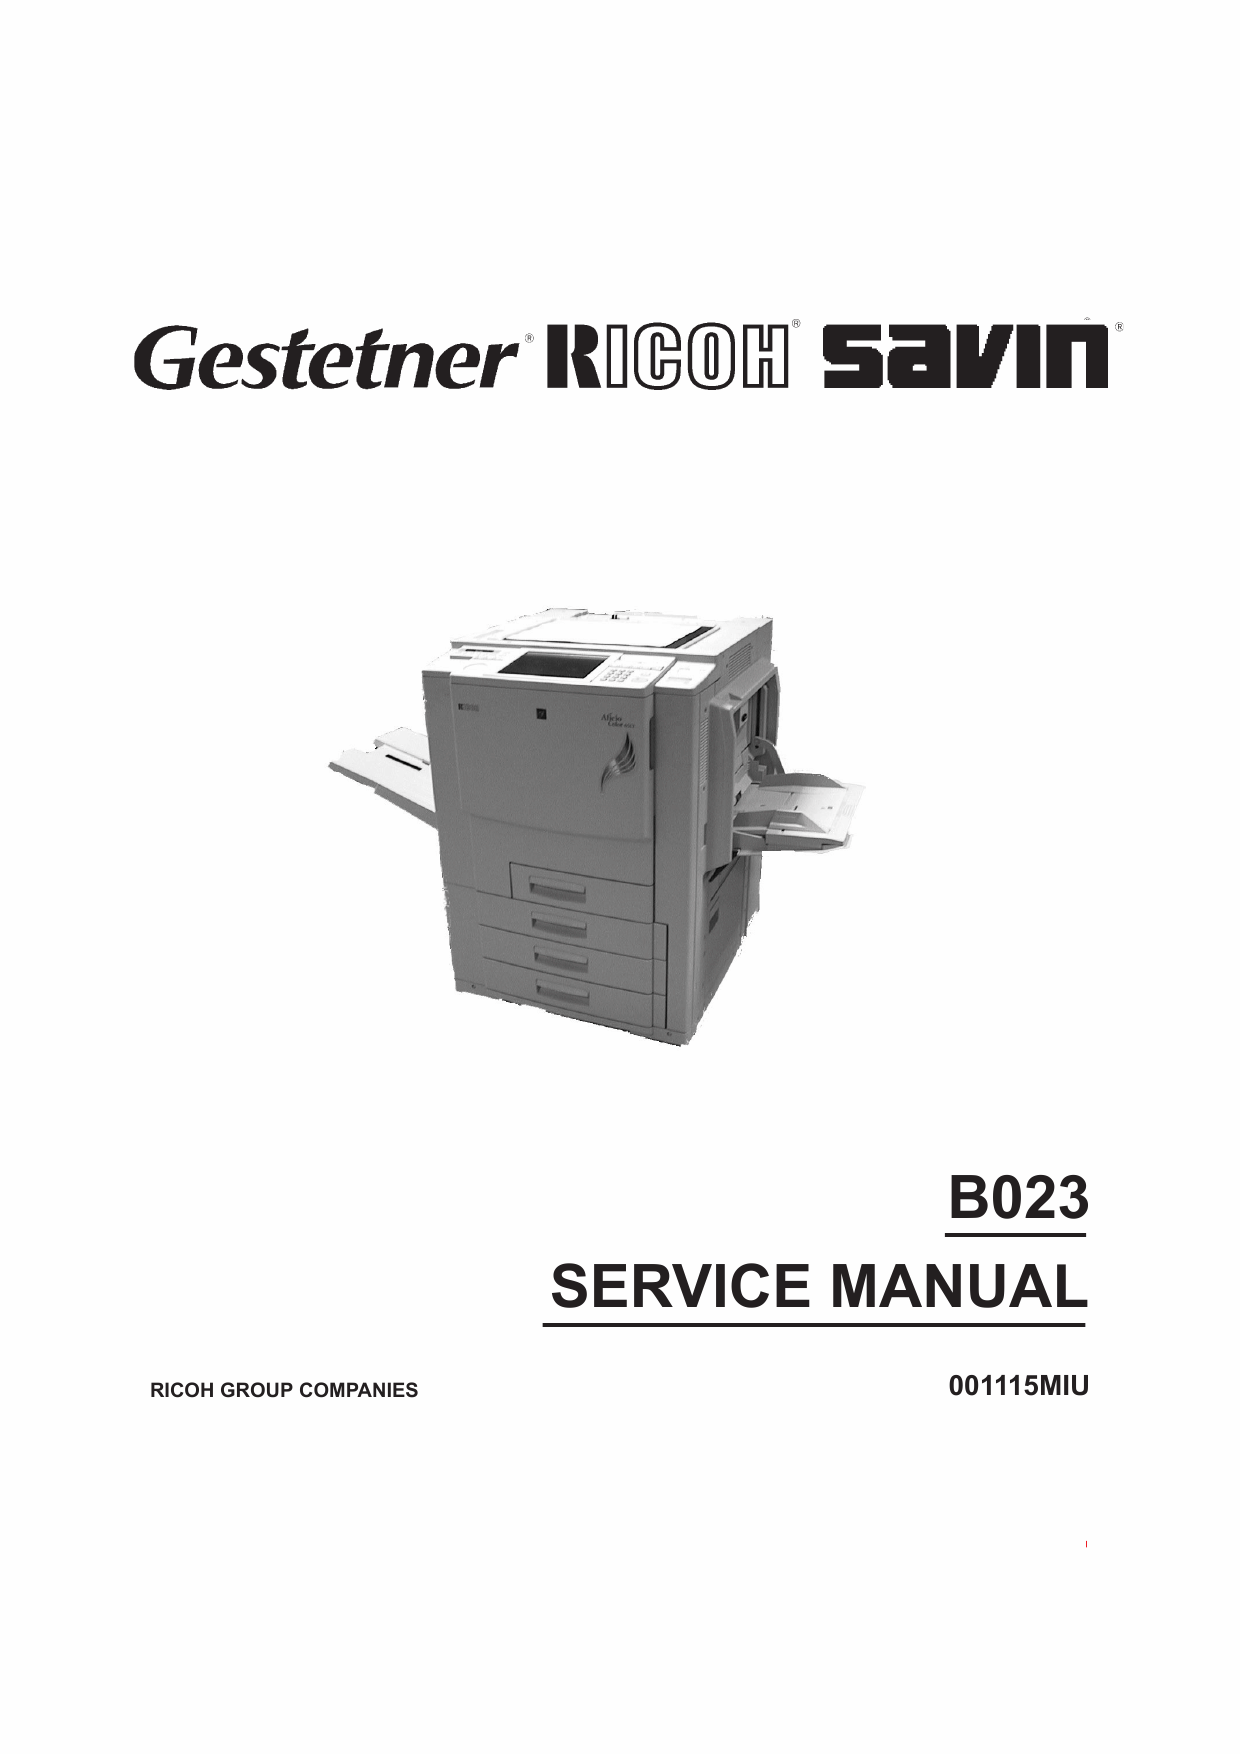 RICOH Aficio 6513 B023 Parts Service Manual-1